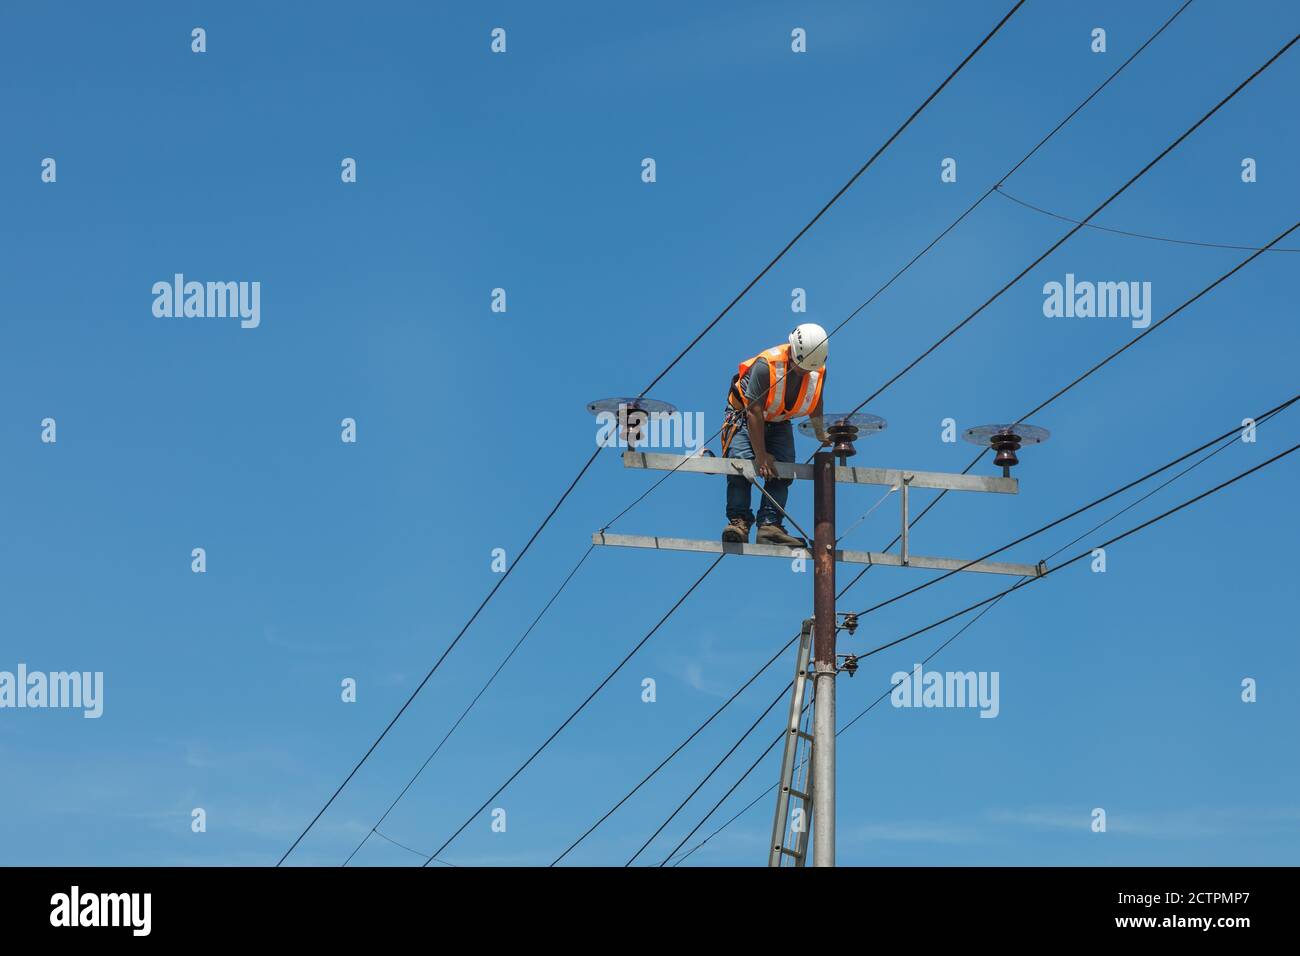 Tenhilan, Sabah, Malesia: Un uomo di linea non protetto sta salendo sulla cima di un pilone ad alta tensione a Tengilan, incline a una caduta pericolosa. Foto Stock